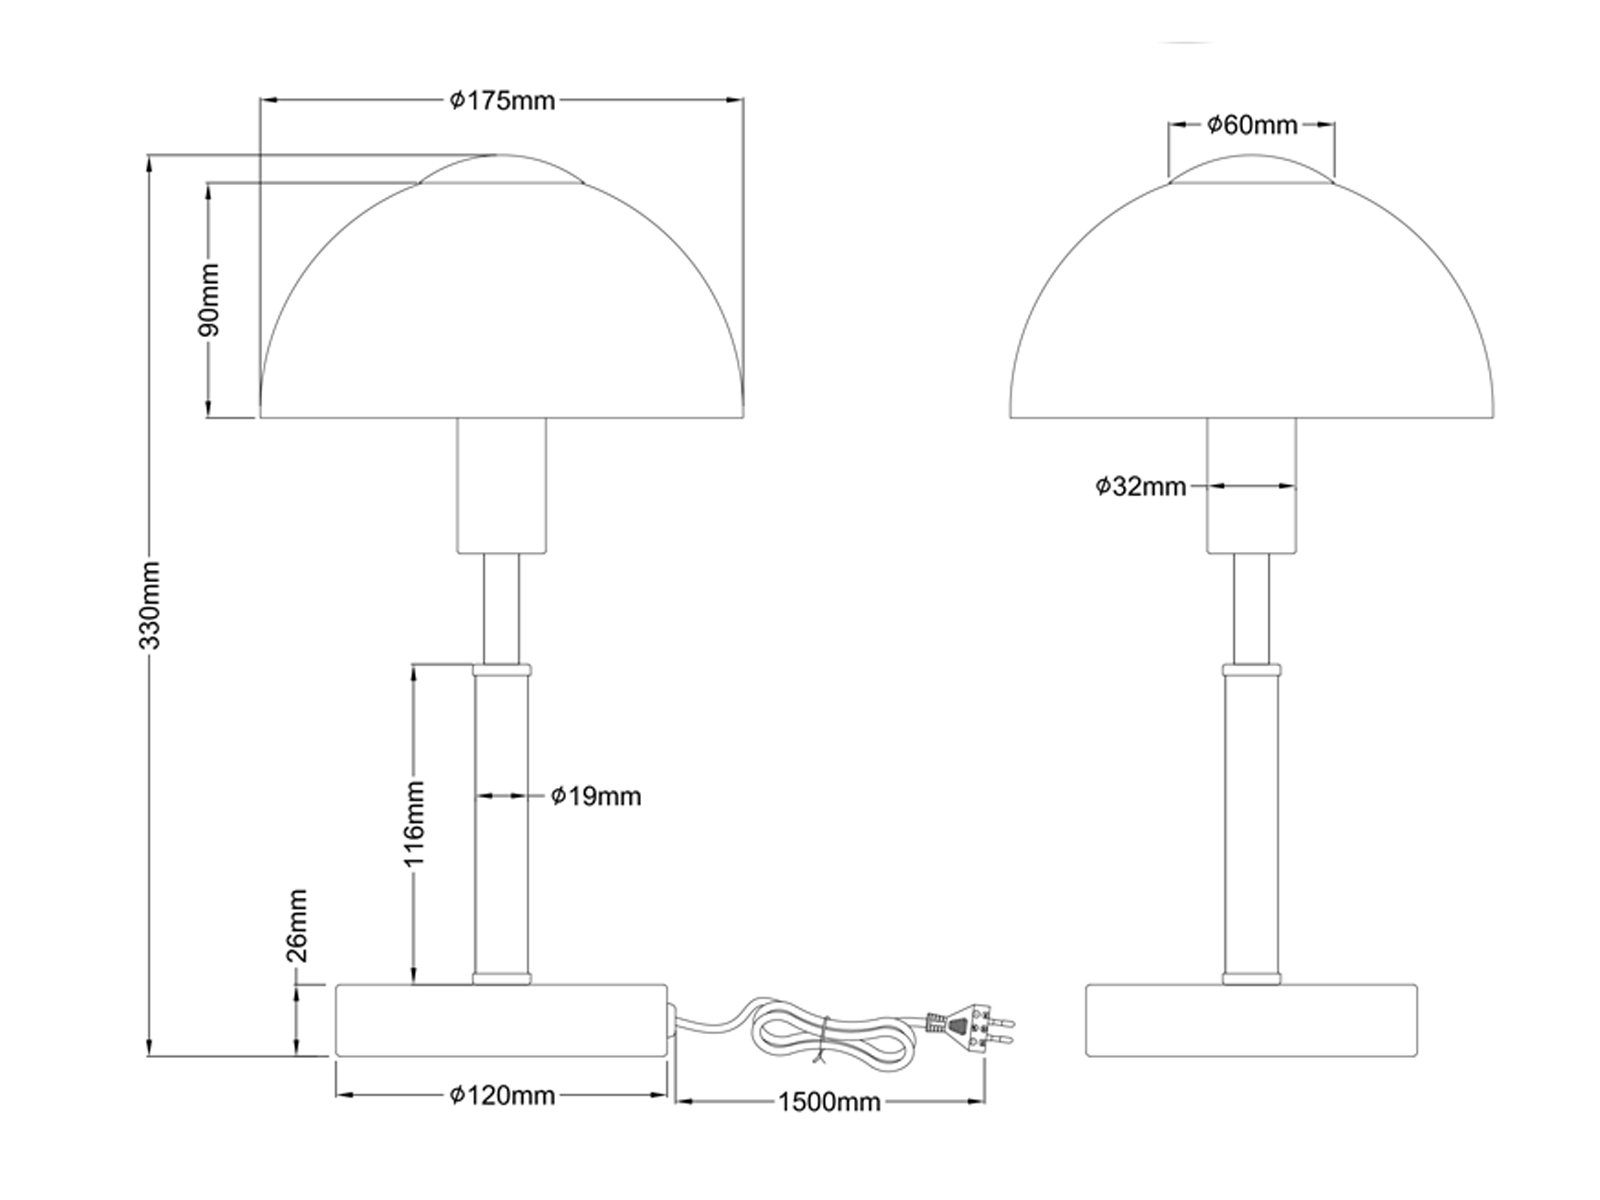 meineWunschleuchte LED Silber-Weiß Bauhaus-stil Nachttischlampe, H: per LED 33cm Lampenschirm, Glas Warmweiß, Dimmfunktion, Touch wechselbar, dimmbar, Pilz-Lampe